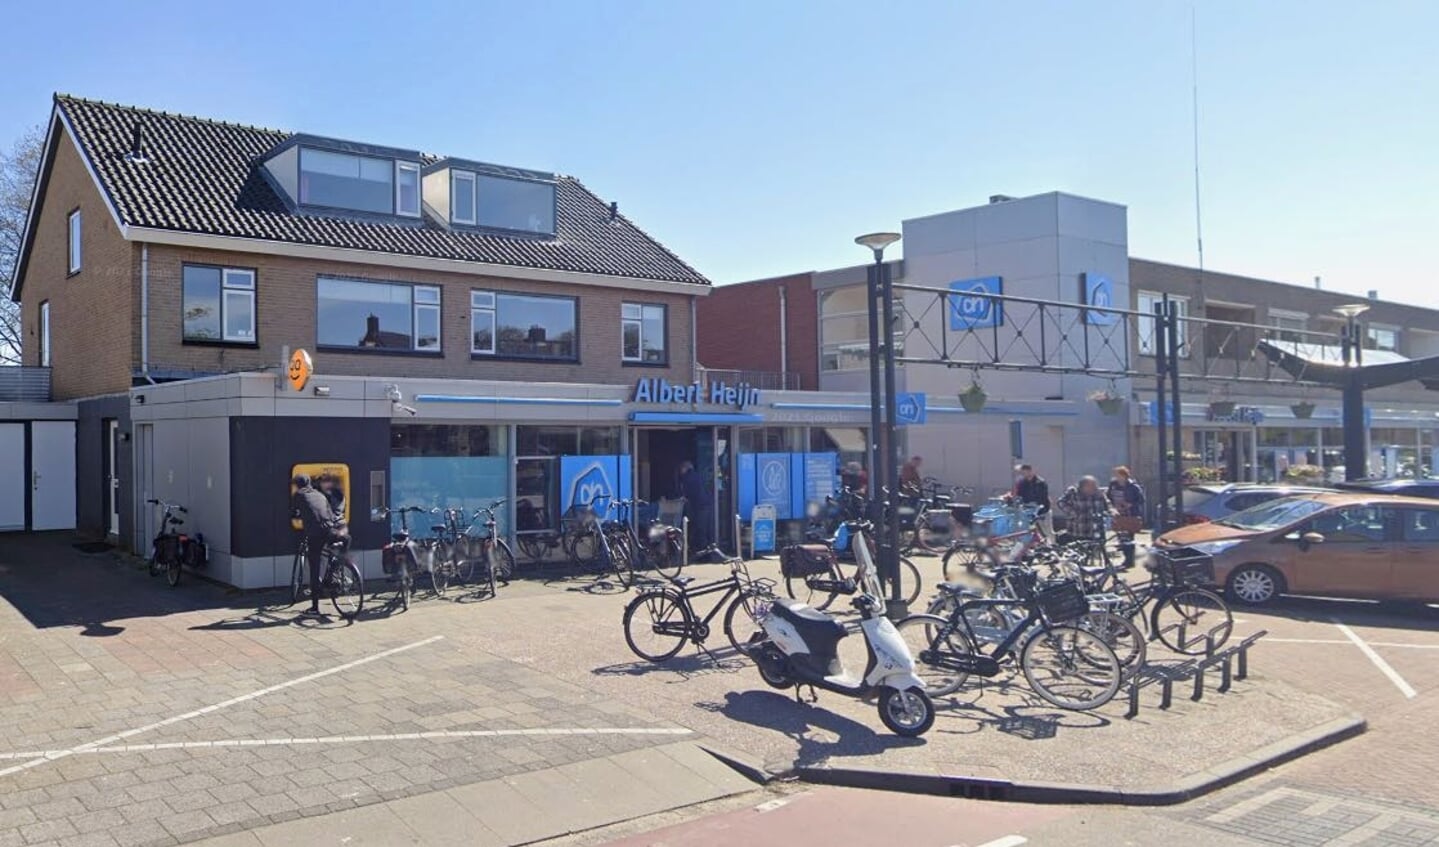 De Albert Heijn-supermarkt aan de Lovinkstraat in Kampen.